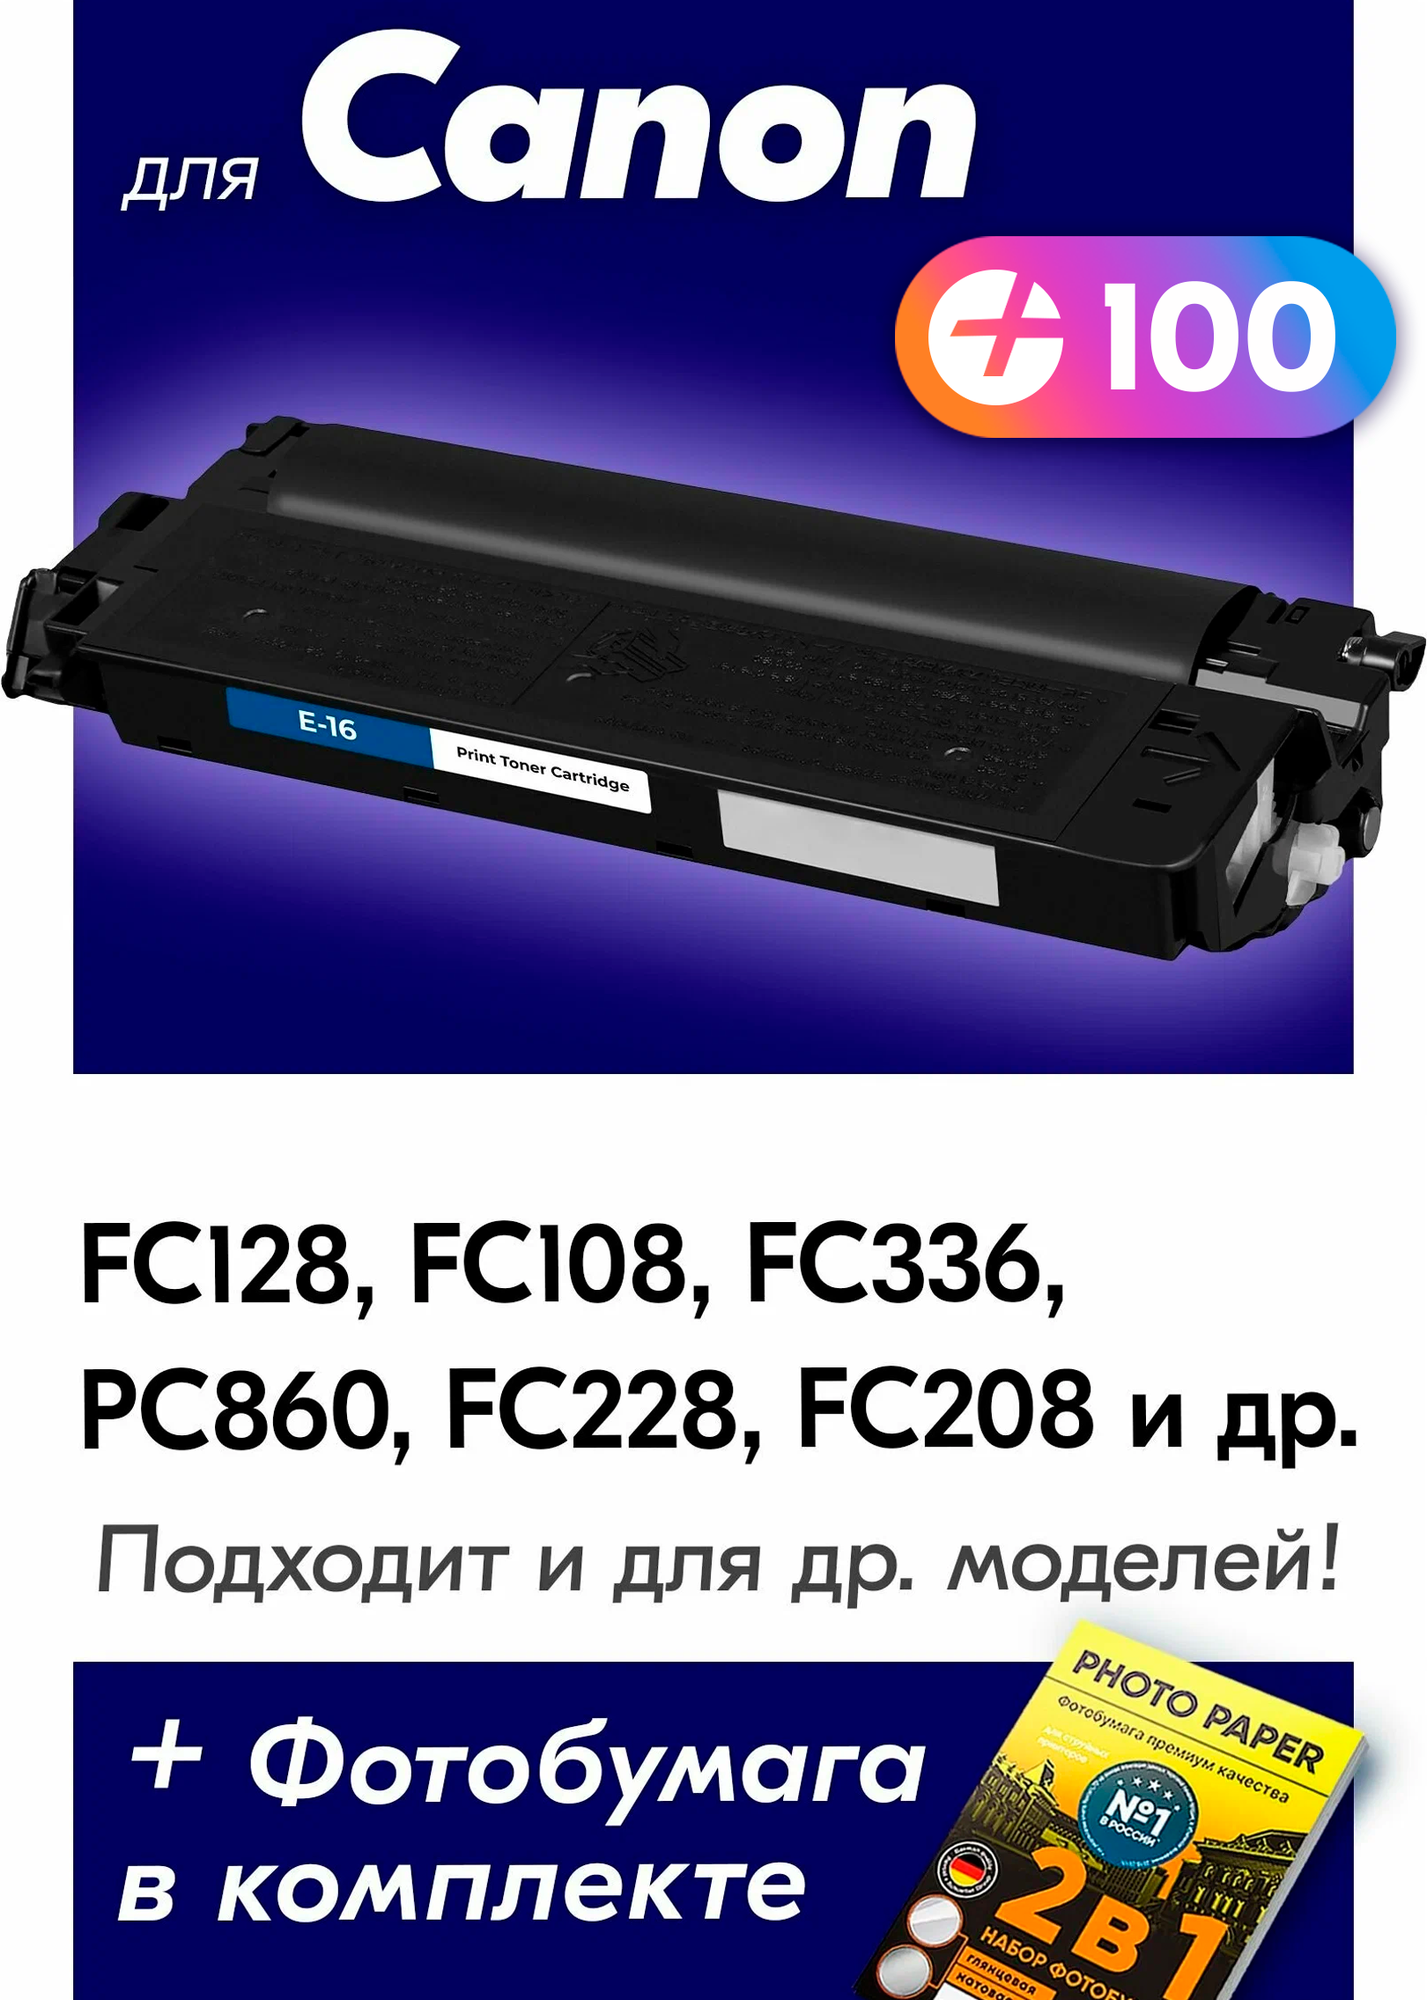 Картридж для лазерного принтера NV Print - фото №5